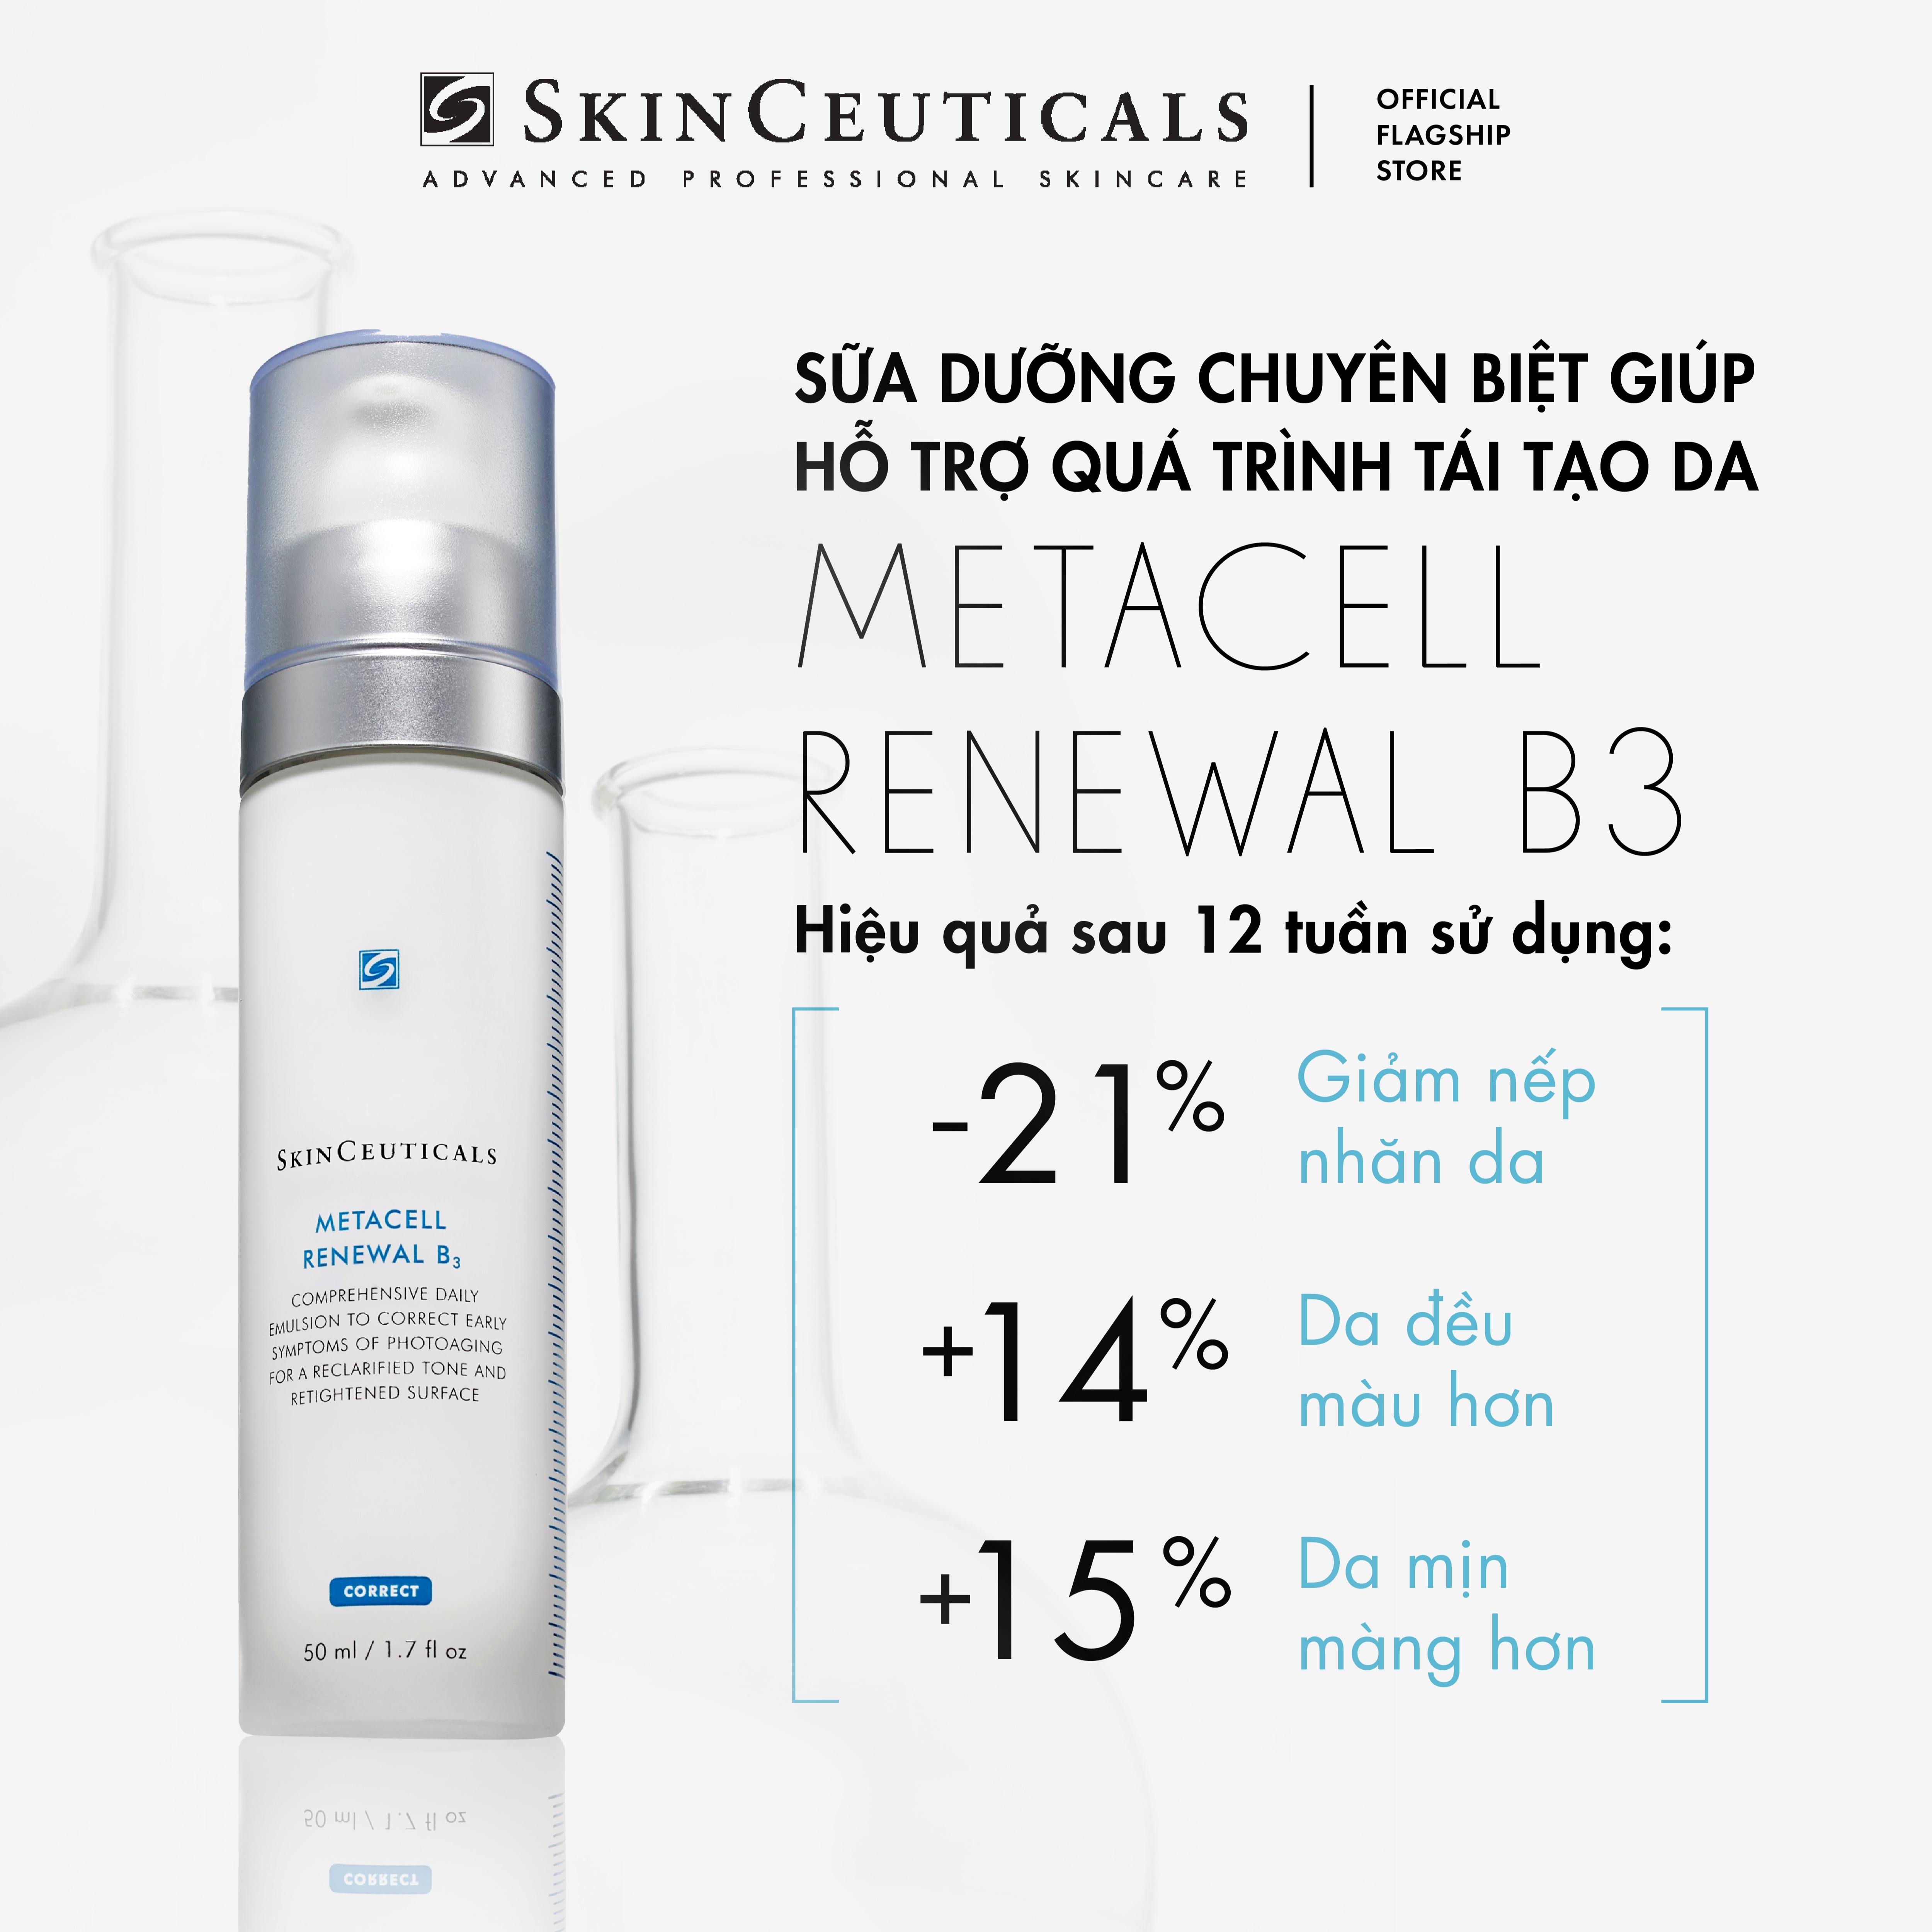 Sữa dưỡng chuyên biệt Skinceuticals Metacell Renewal B3 giảm dấu hiệu lão hóa da và hỗ trợ quá trình tái tạo da giúp da săn chắc và căng mịn 50ml